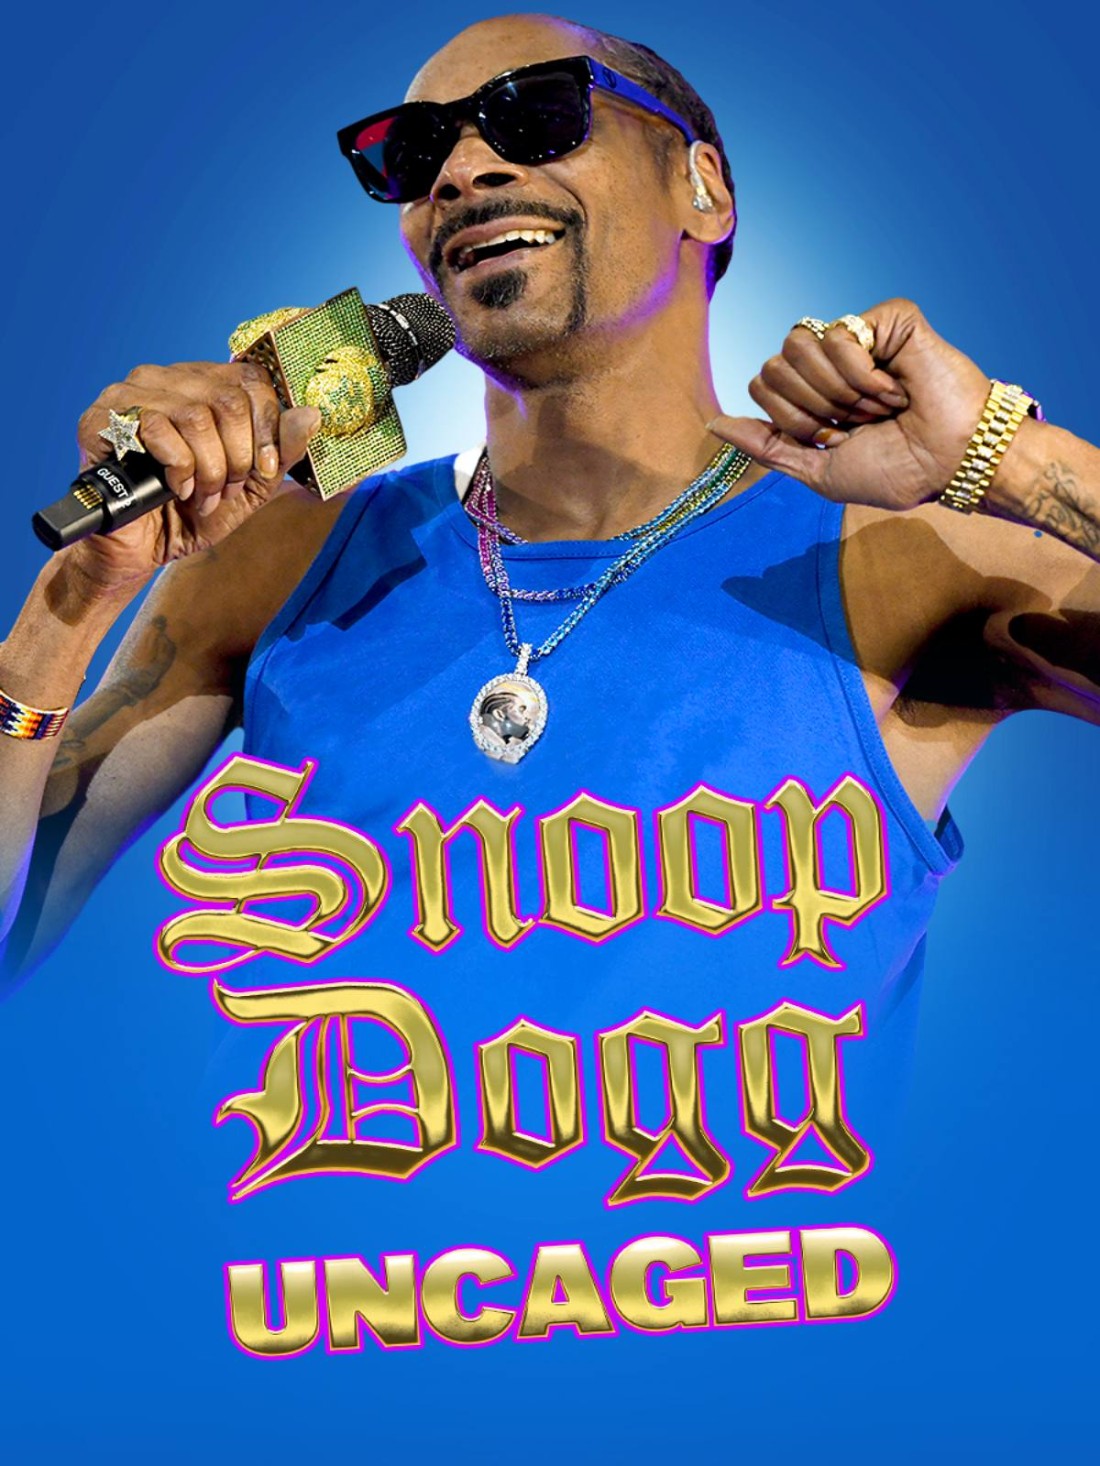 Snoop Dogg Uncaged 2022 [720p] WEB-DL (H264) 169336e3c9b453708f7e8b3603c5639b